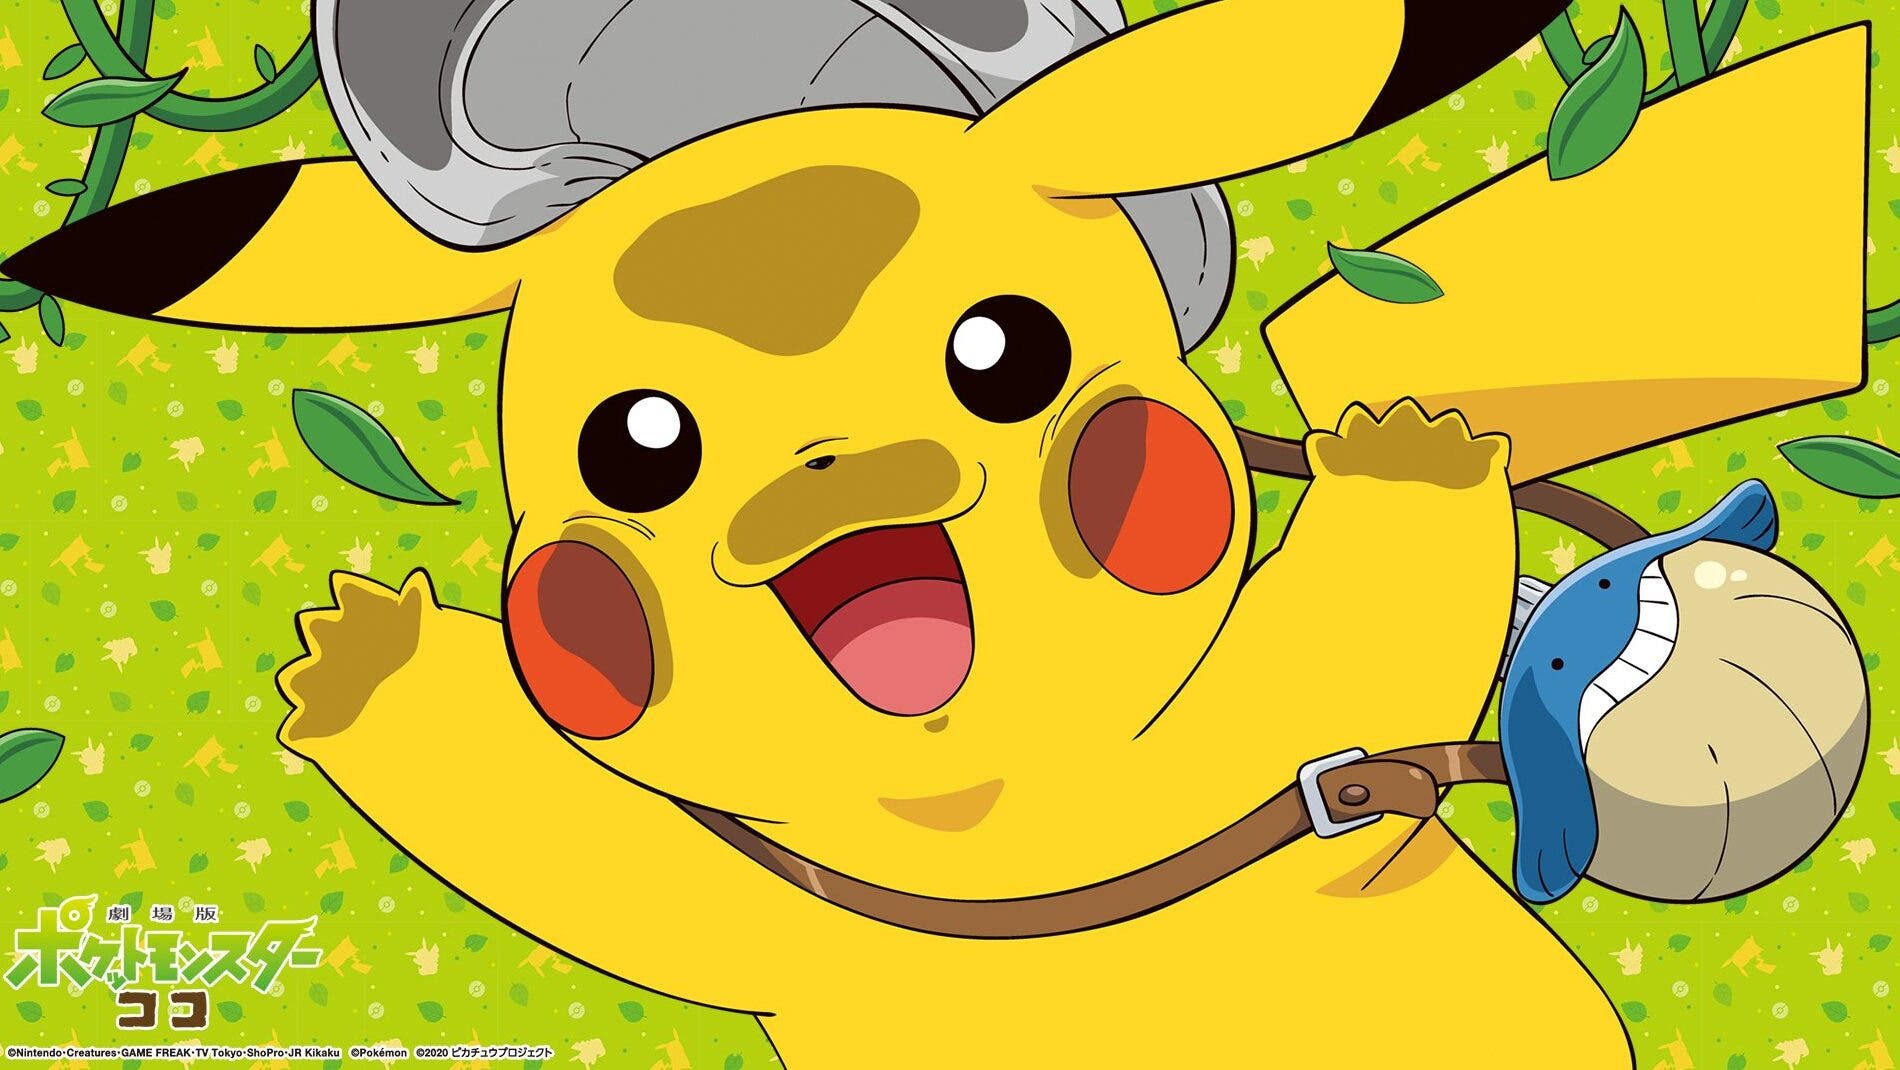 Se comparten fondos de pantalla oficiales de la película Pokémon Coco  protagonizados por Pikachu - Nintenderos